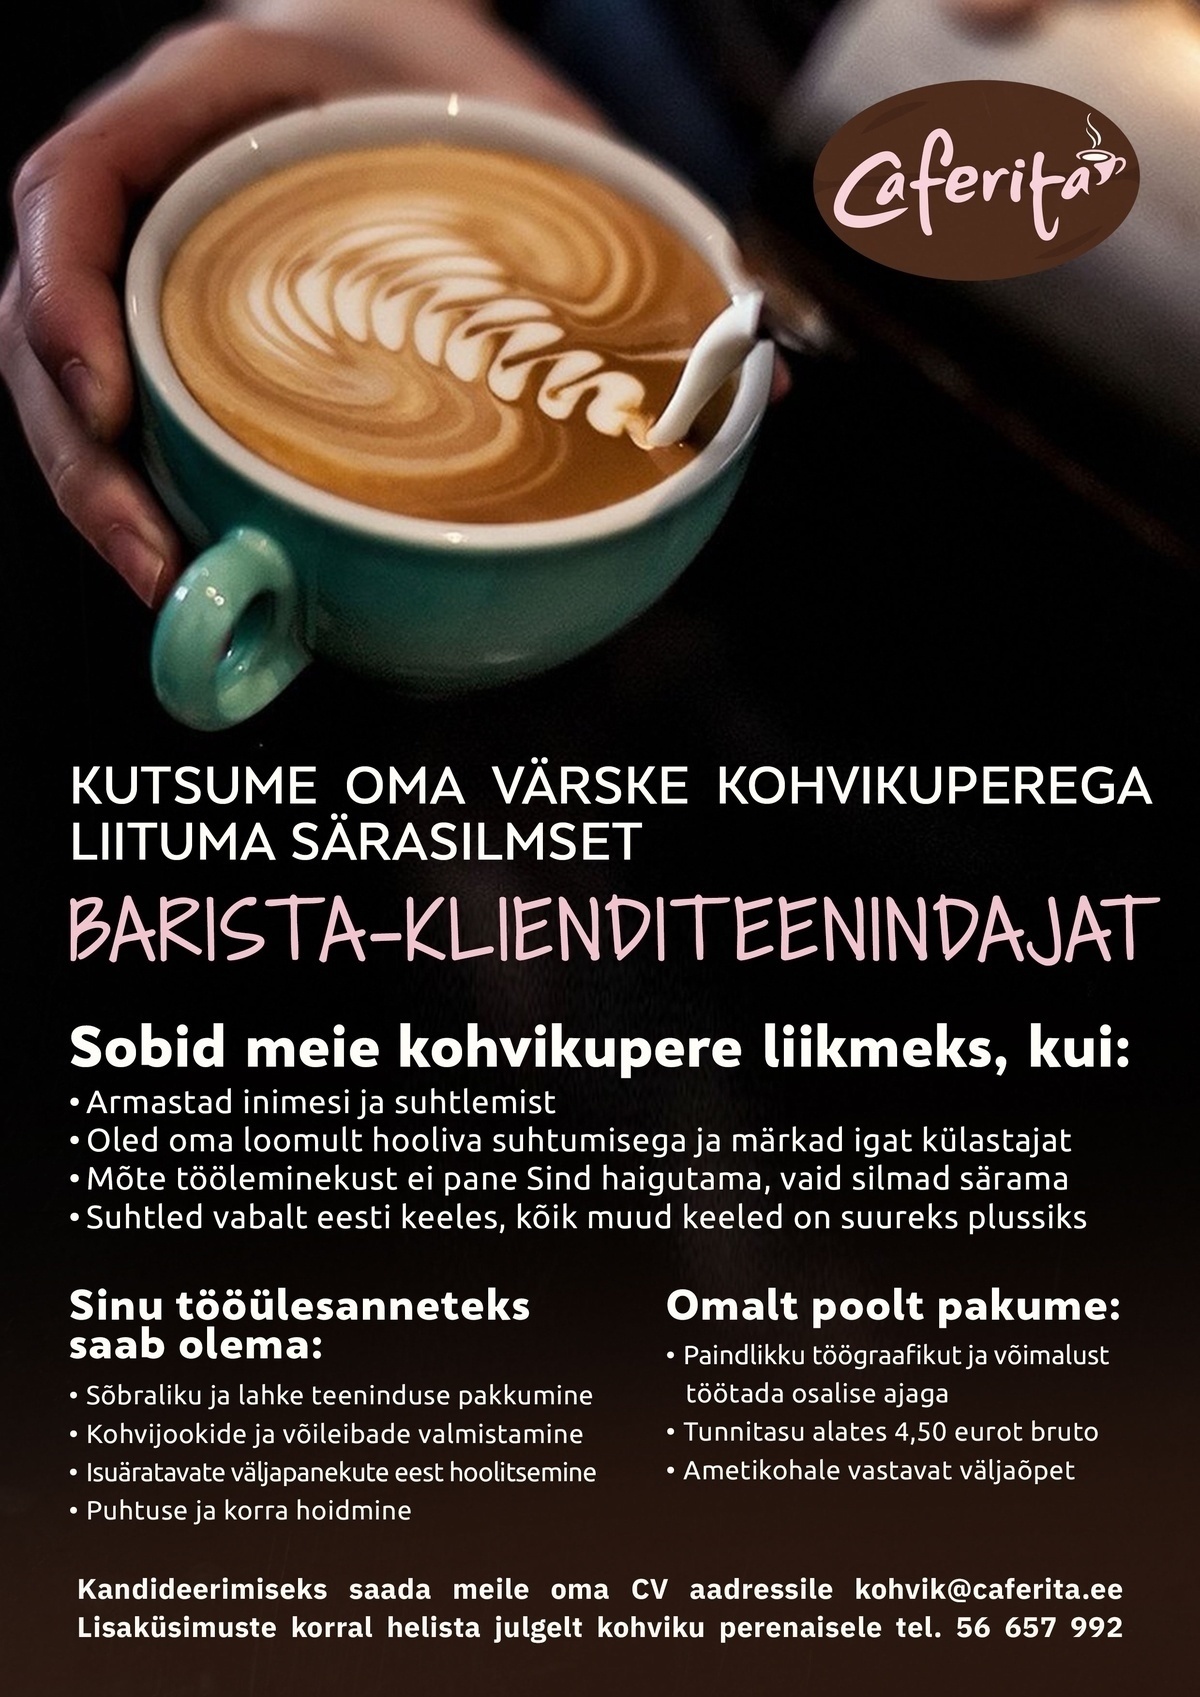 Kohviaeg OÜ Barista - klienditeenindaja